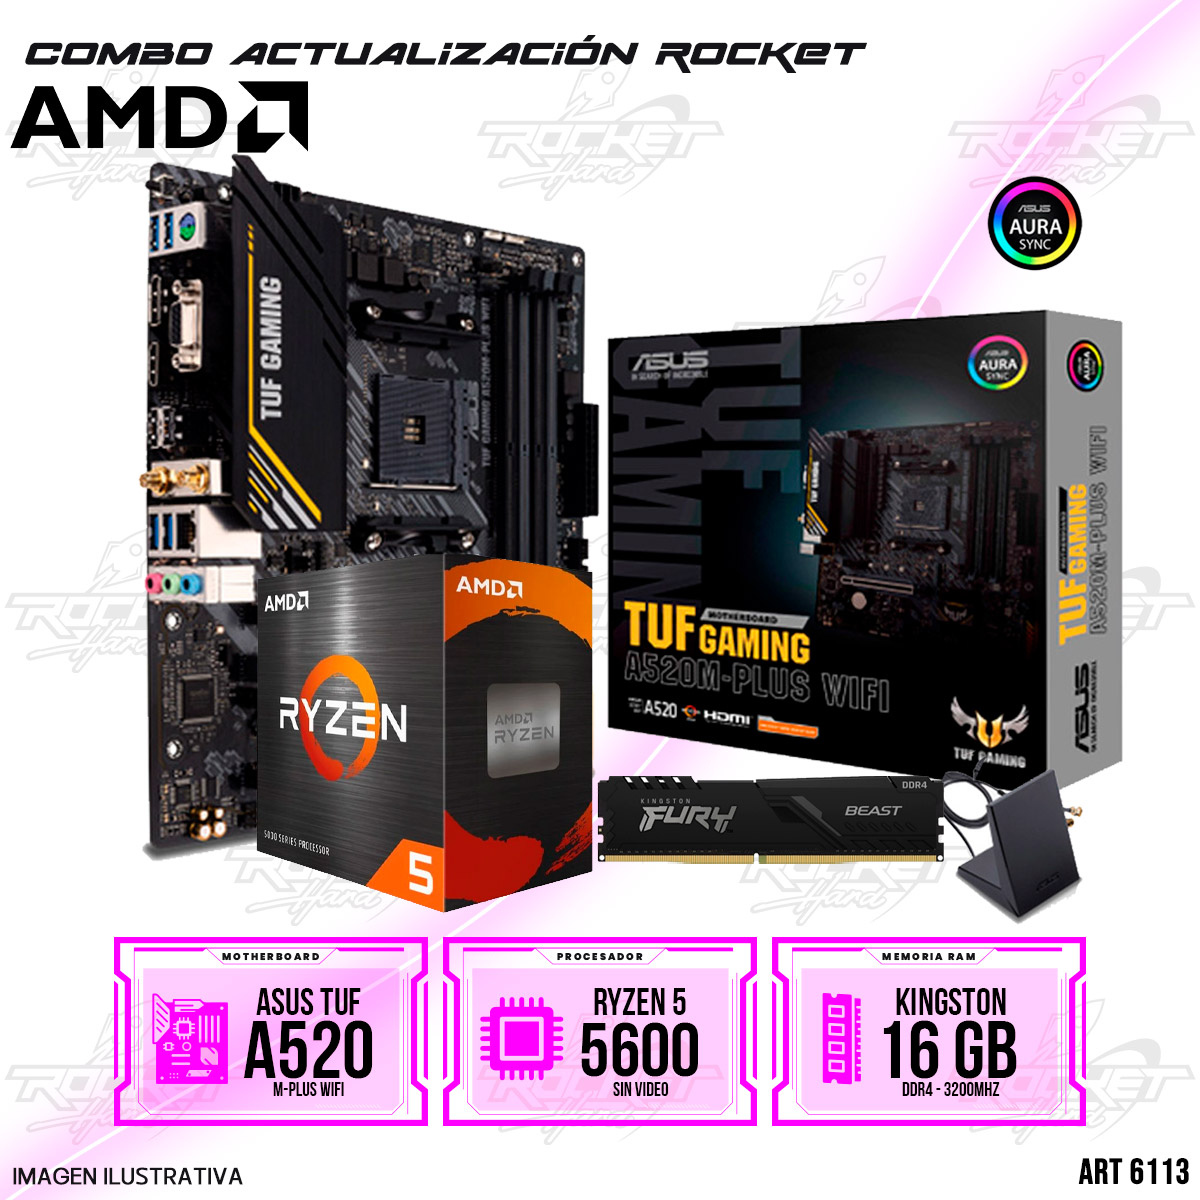 COMBO ROCKET AMD RYZEN 5 5600 - A520 WIFI - 16GB RAM